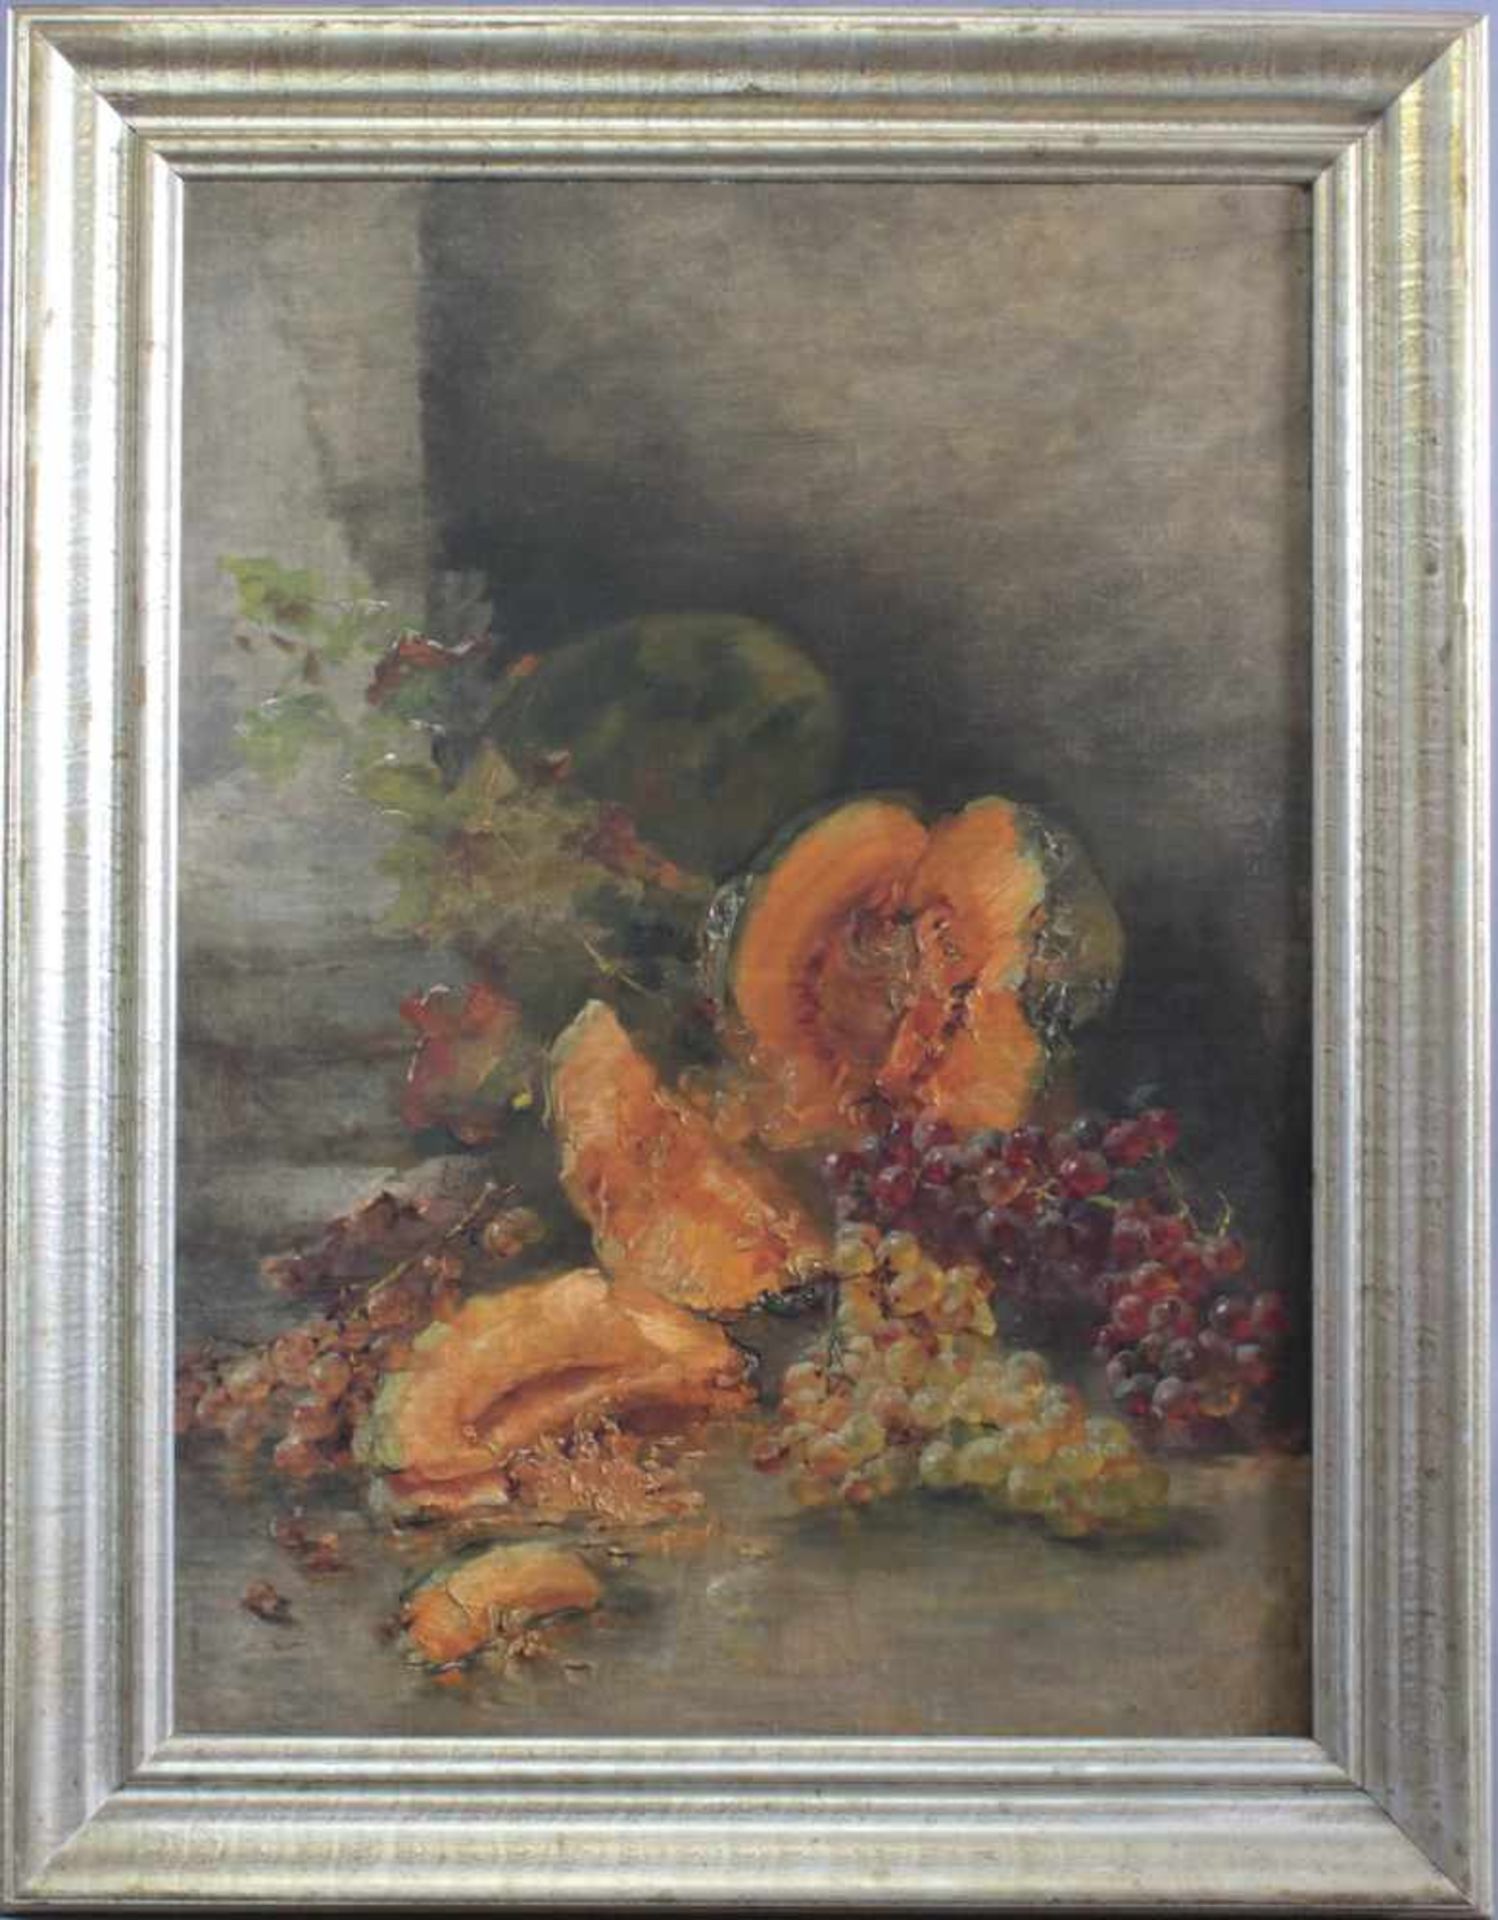 Stilleben mit Früchten, unbekannter Künstler des 20. Jh.Öl auf Faserplatte gemalt, gerahmt, ca. 75 x